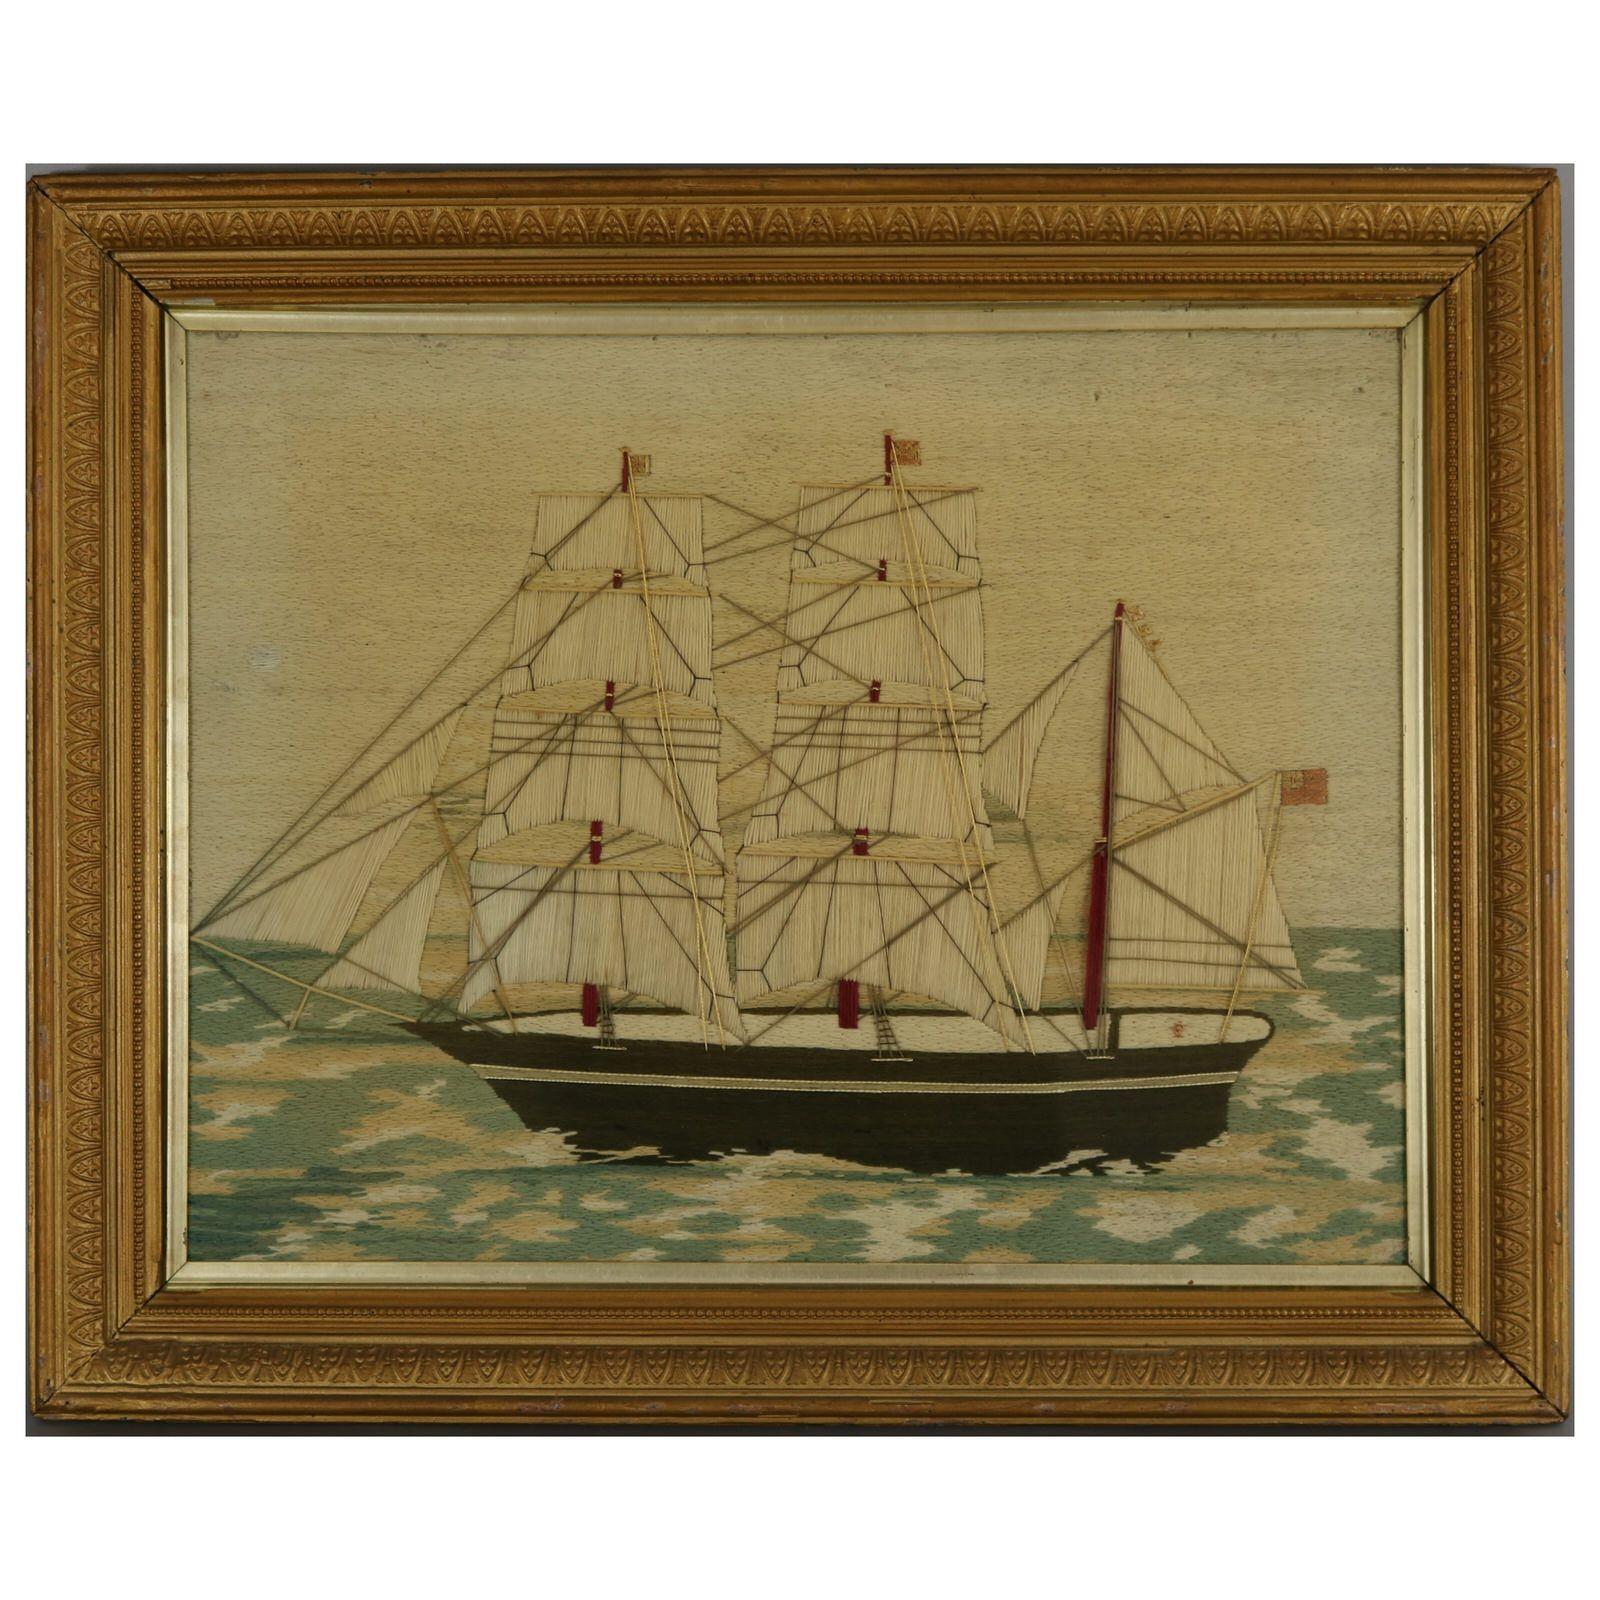 Pair of Sailors Woolwork Bilder eines Man-of-War-Schiffe. Mit Wolle auf Leinwandgrund gearbeitet. Farben weiß, blau, braun, rot, rosa und cremefarben. Beide zeigen ein dreimastiges Kriegsschiff, das eine britische rote Fahne führt (eine Fahne, die